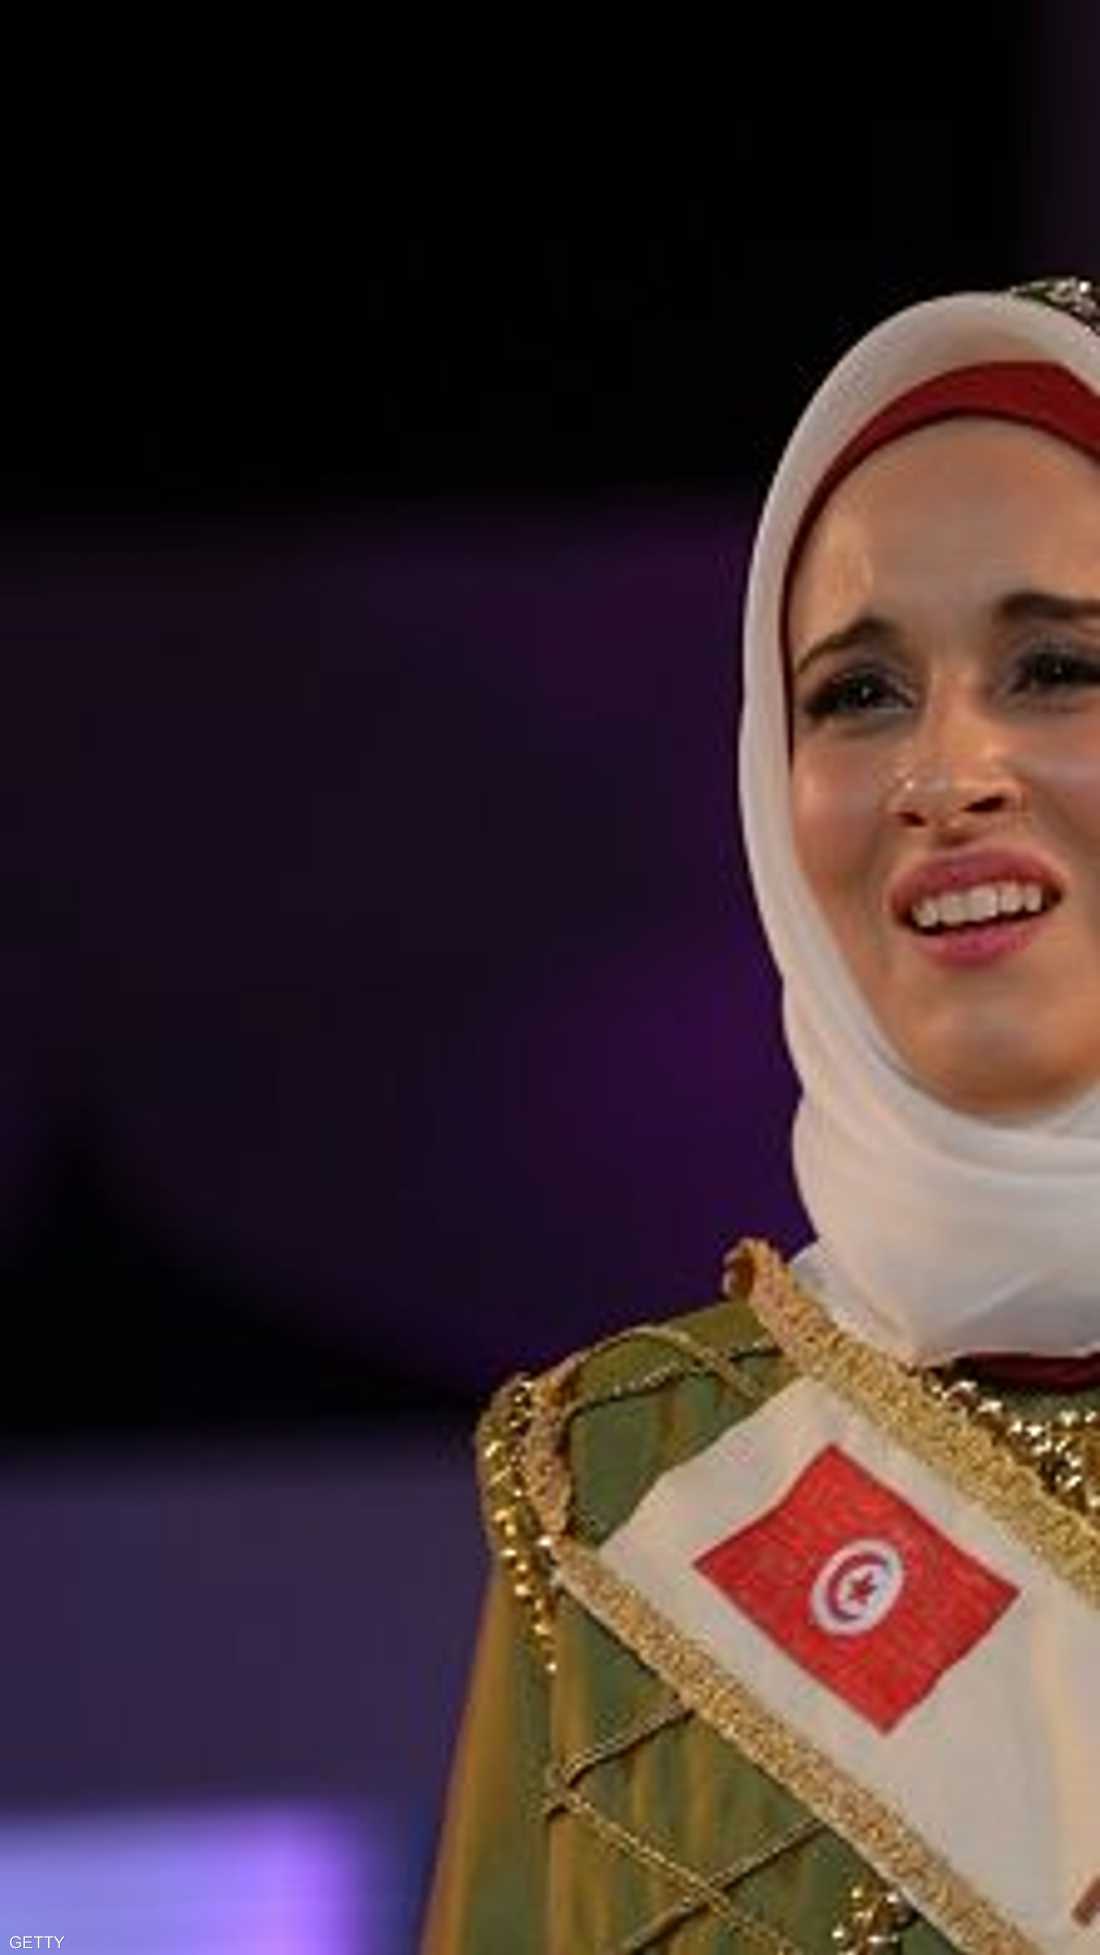 التونسية فاطمة بن غوفراش (25 عاما) حازت تاج الجمال الإسلامي